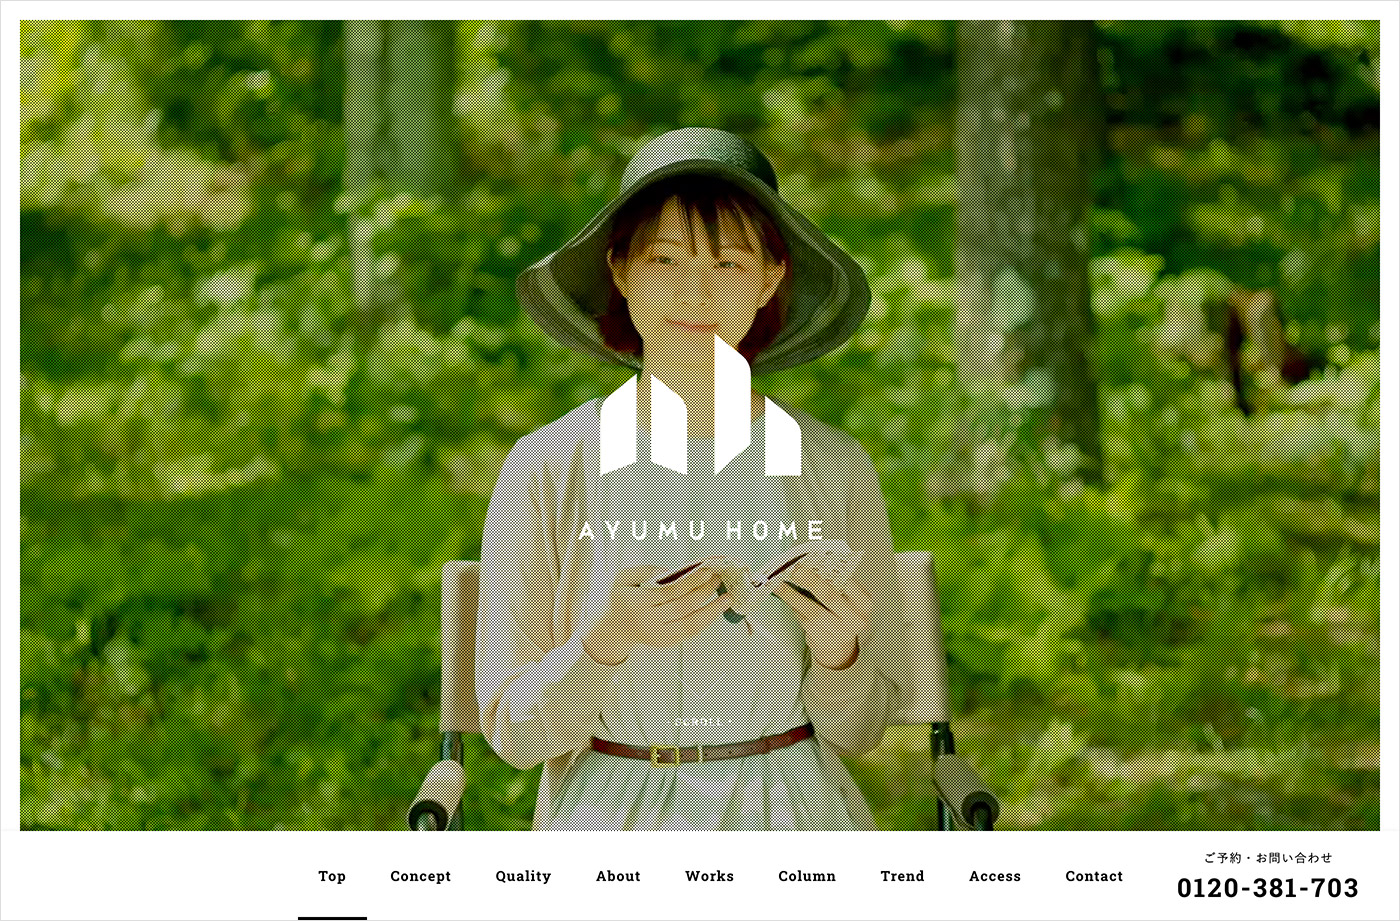 アユムホーム AYUMU HOME 自由設計の注文住宅ウェブサイトの画面キャプチャ画像